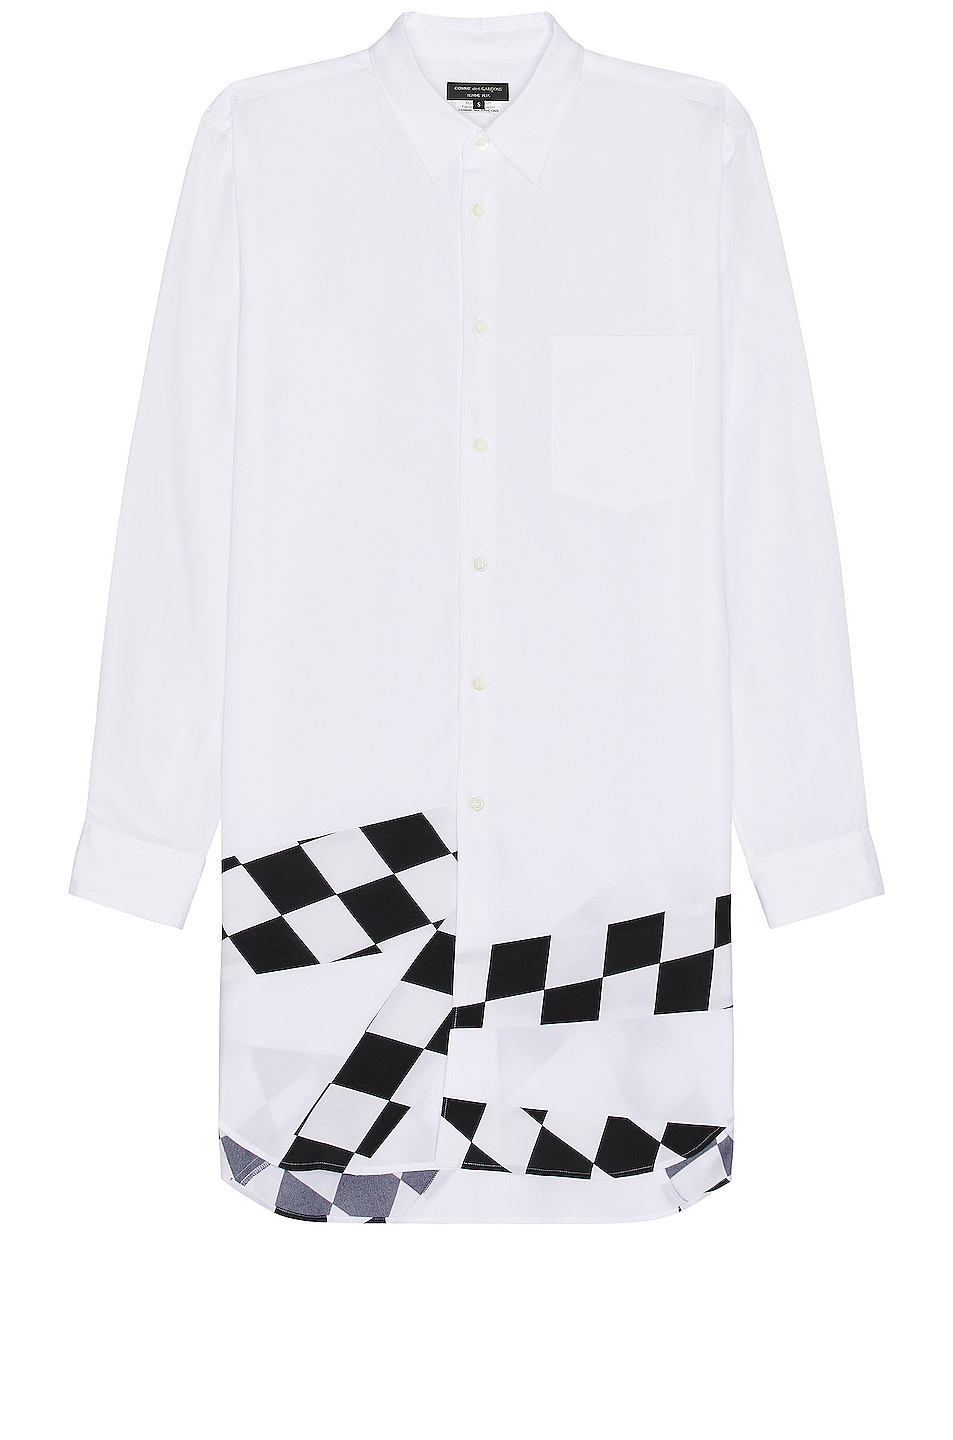 COMME des GARCONS Homme Plus Shirt in White & Black | FWRD